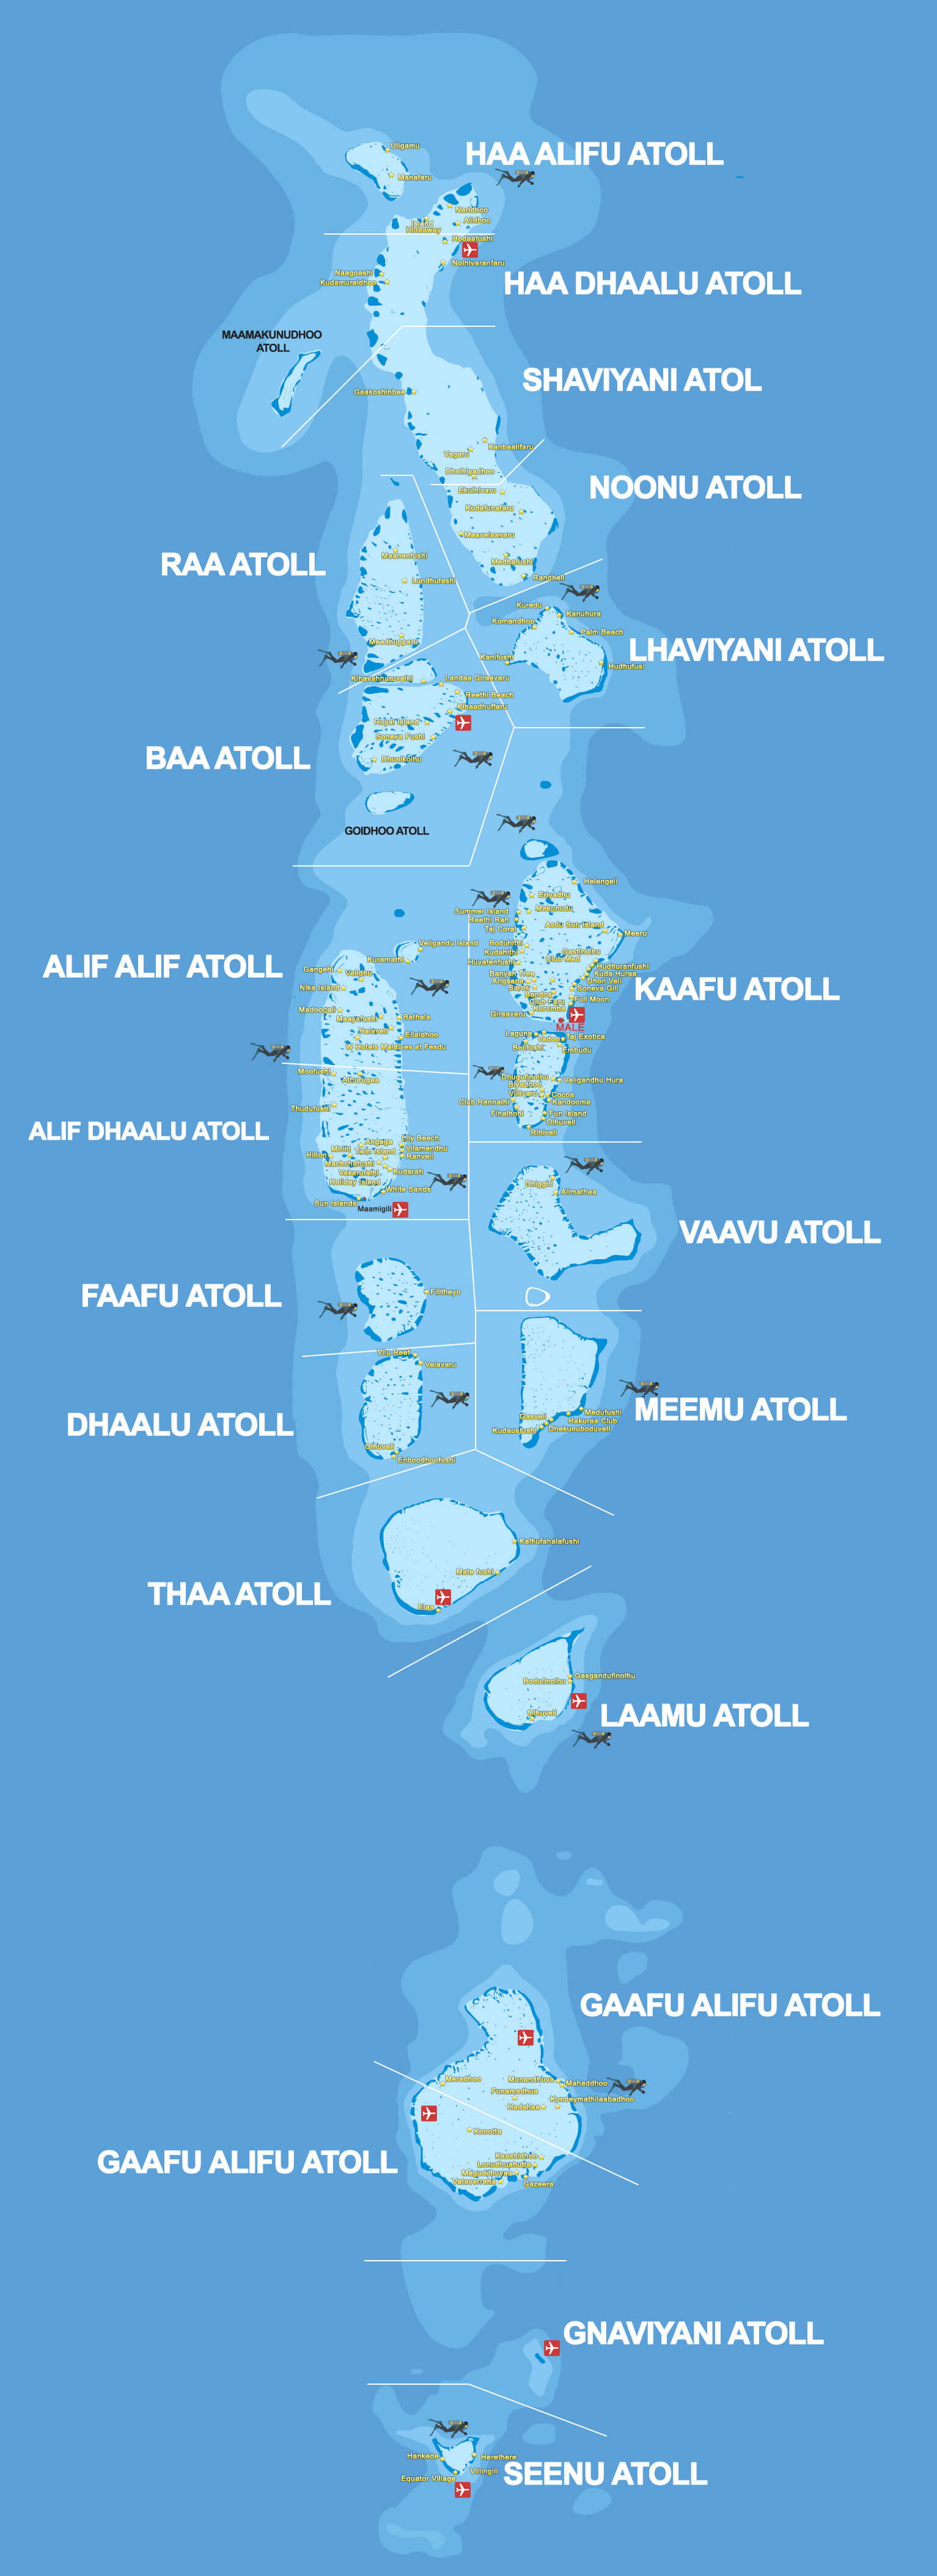 Maldives Map 